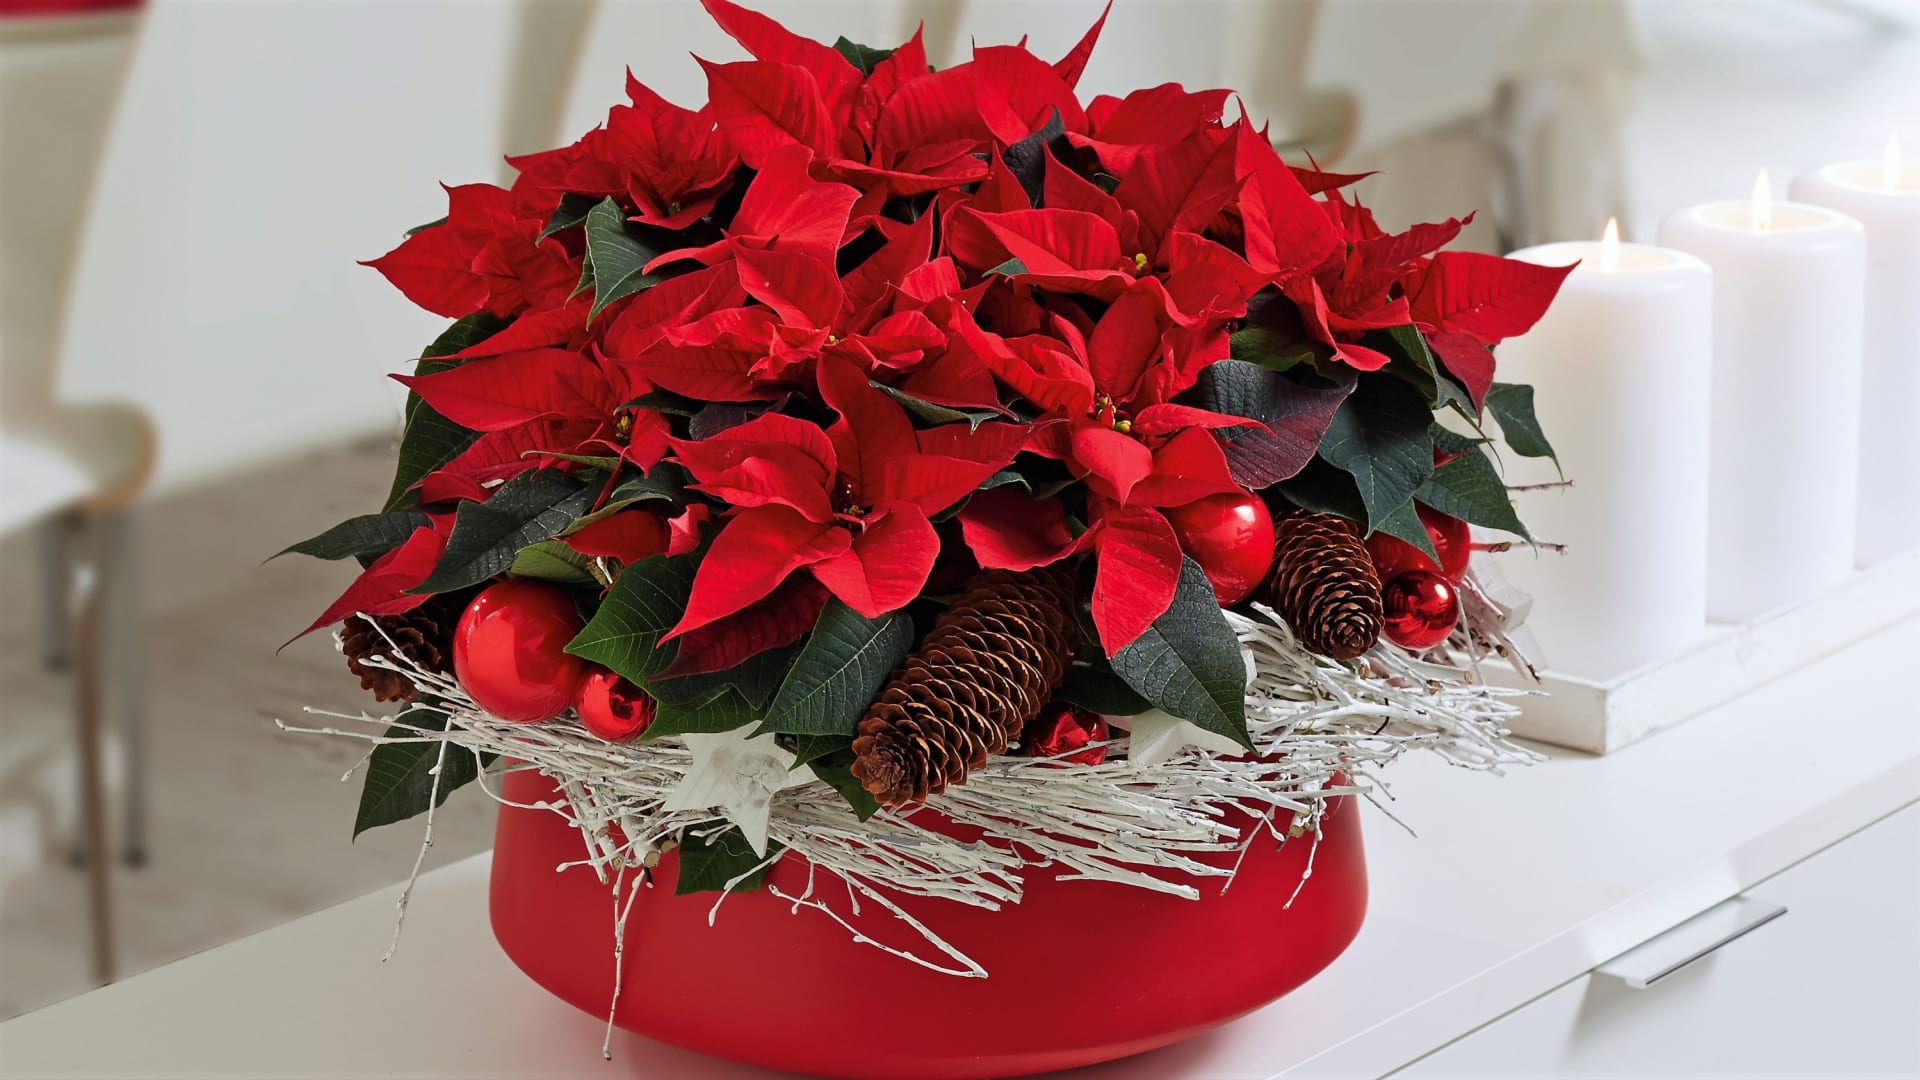 Typickou květinou, která dnes o Vánocích zdobí nejednu českou domácnost, je vánoční hvězda neboli poinsettie. Zářivě červené, růžové, bílé či žluté listeny se zelenožlutými květy uprostřed, tak vypadá správná a zdravá vánoční hvězda.